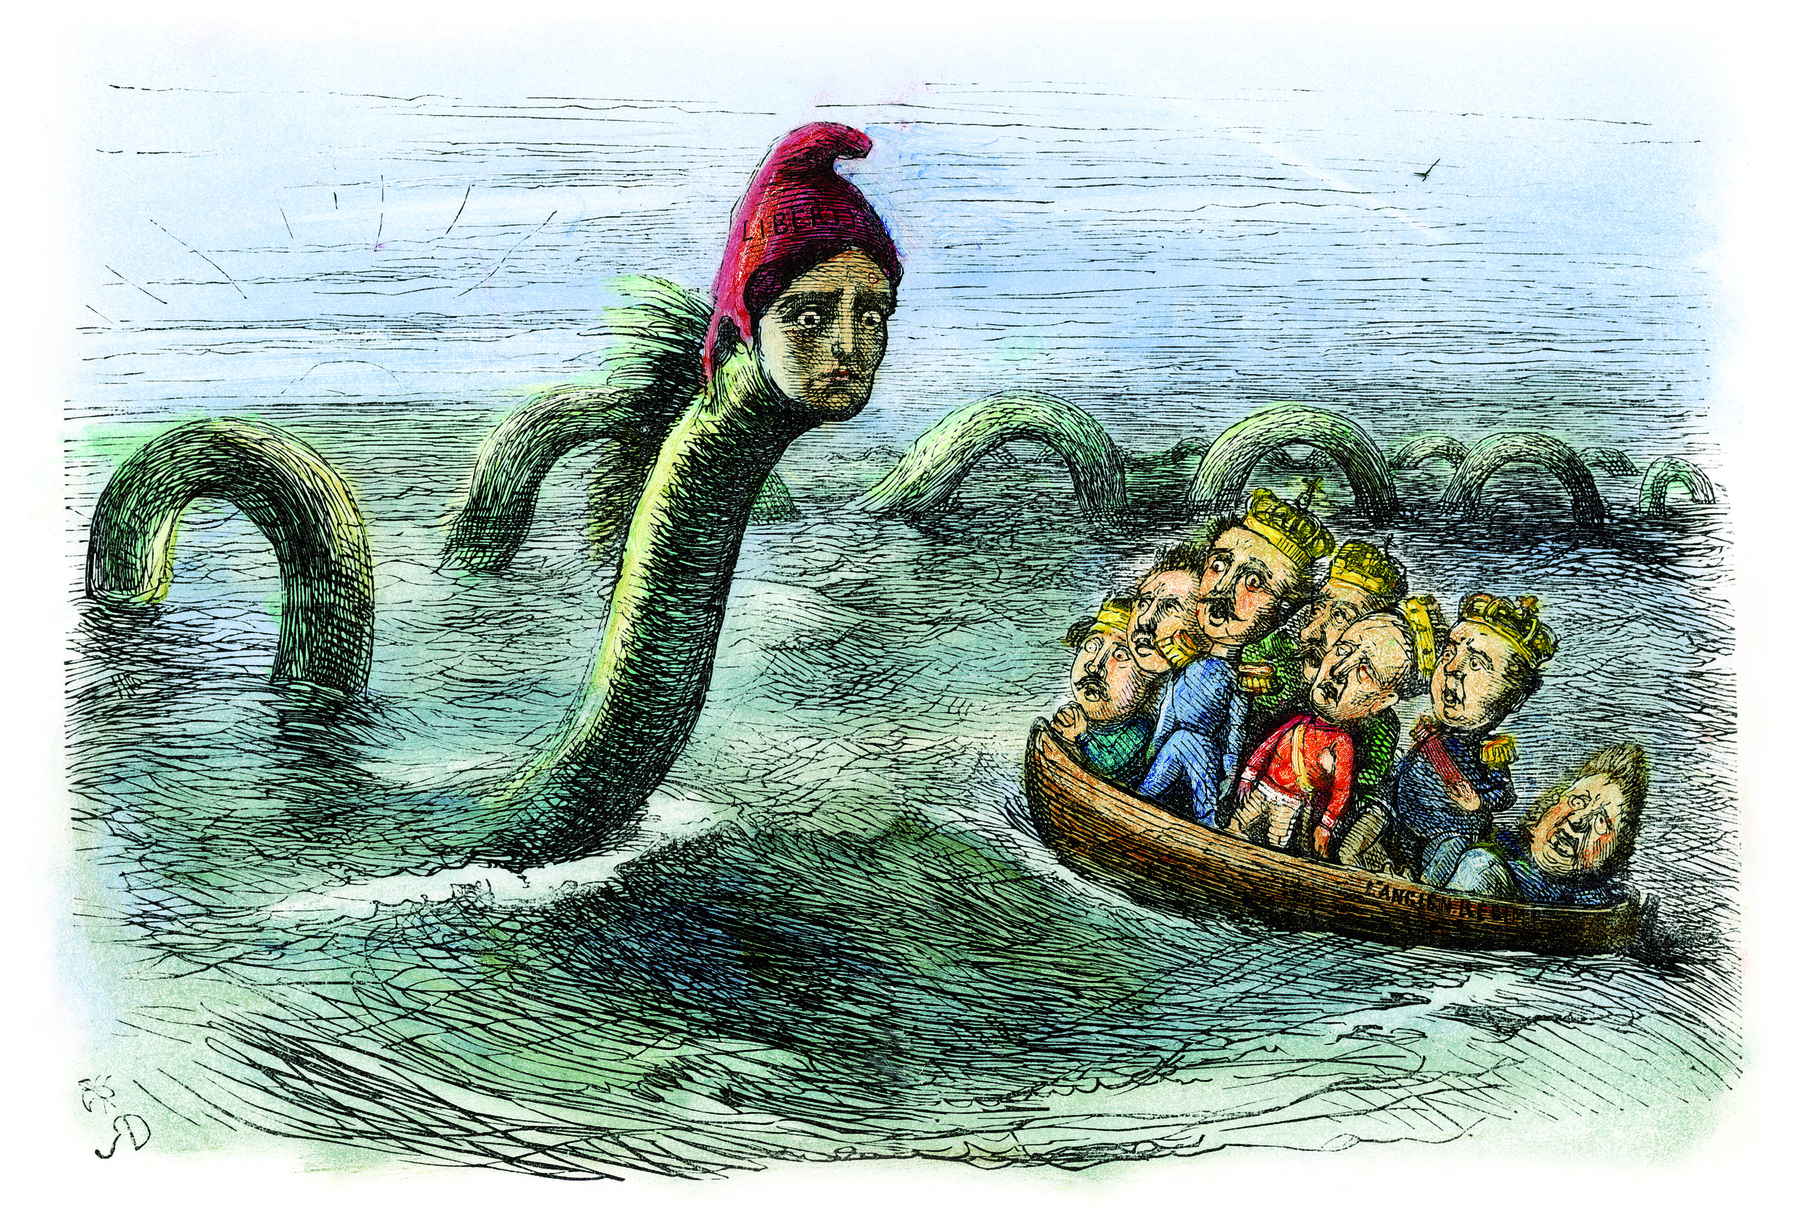 Imagem: Charge. Homens com coroas em uma pequena embarcação em alto mar. Eles olham boquiabertos para uma serpente marinha gigante. Ela tem o rosto de uma pessoa, lábios pequenos, olhos arregalados e um gorro vermelho. Fim da imagem.